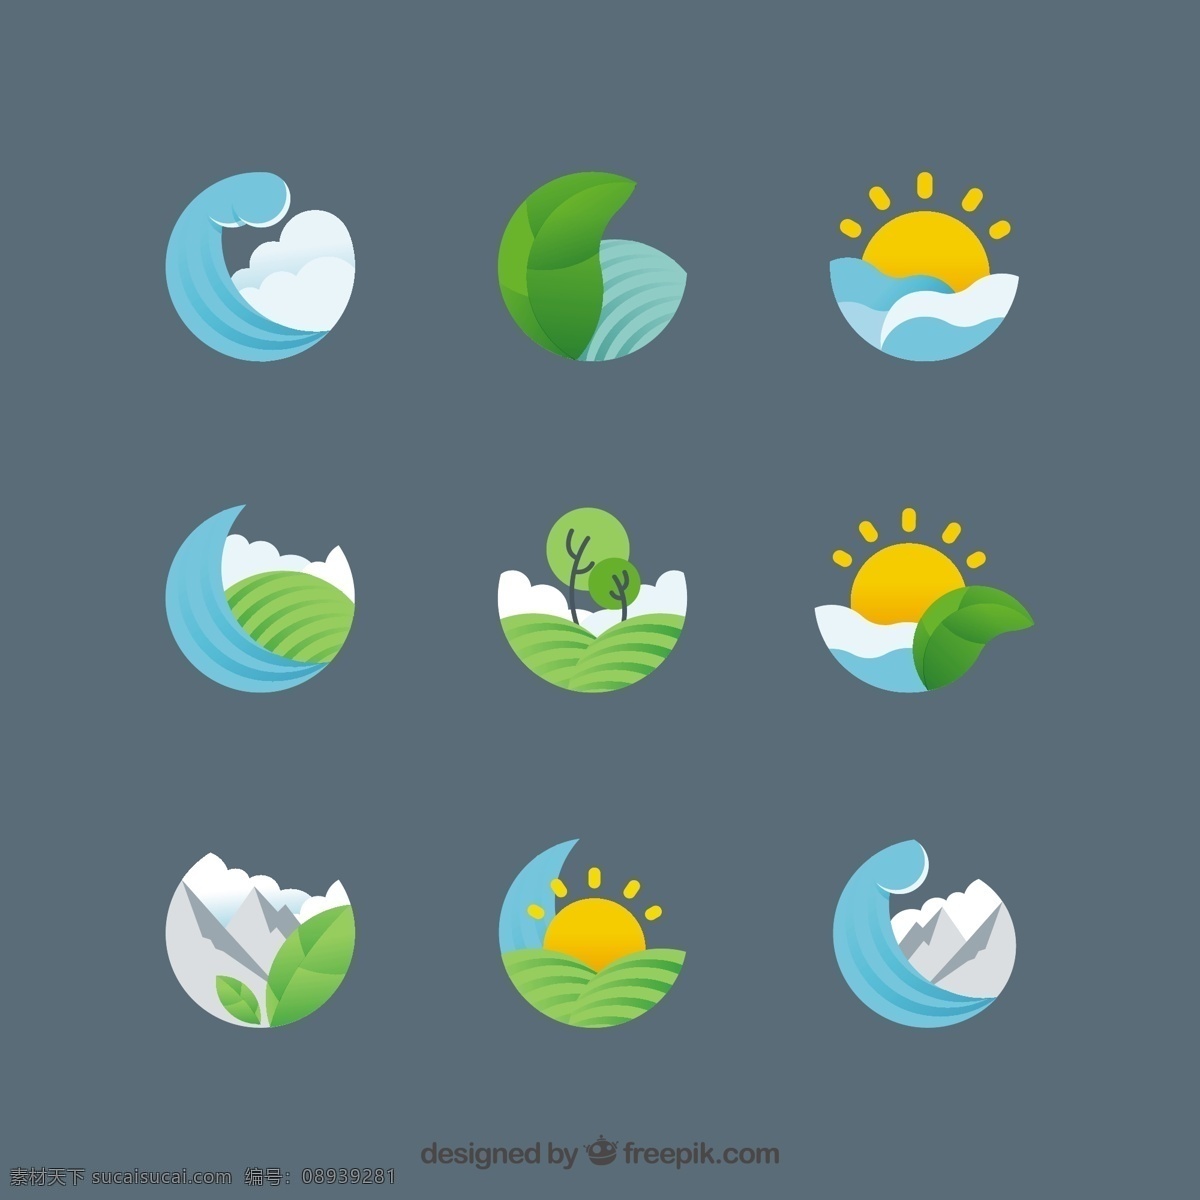 平面设计 中 各种 自然 符号 标志 树 叶 海洋 太阳 景观 平面 生态 树木 山 树的标志 自然标志 阳光普照